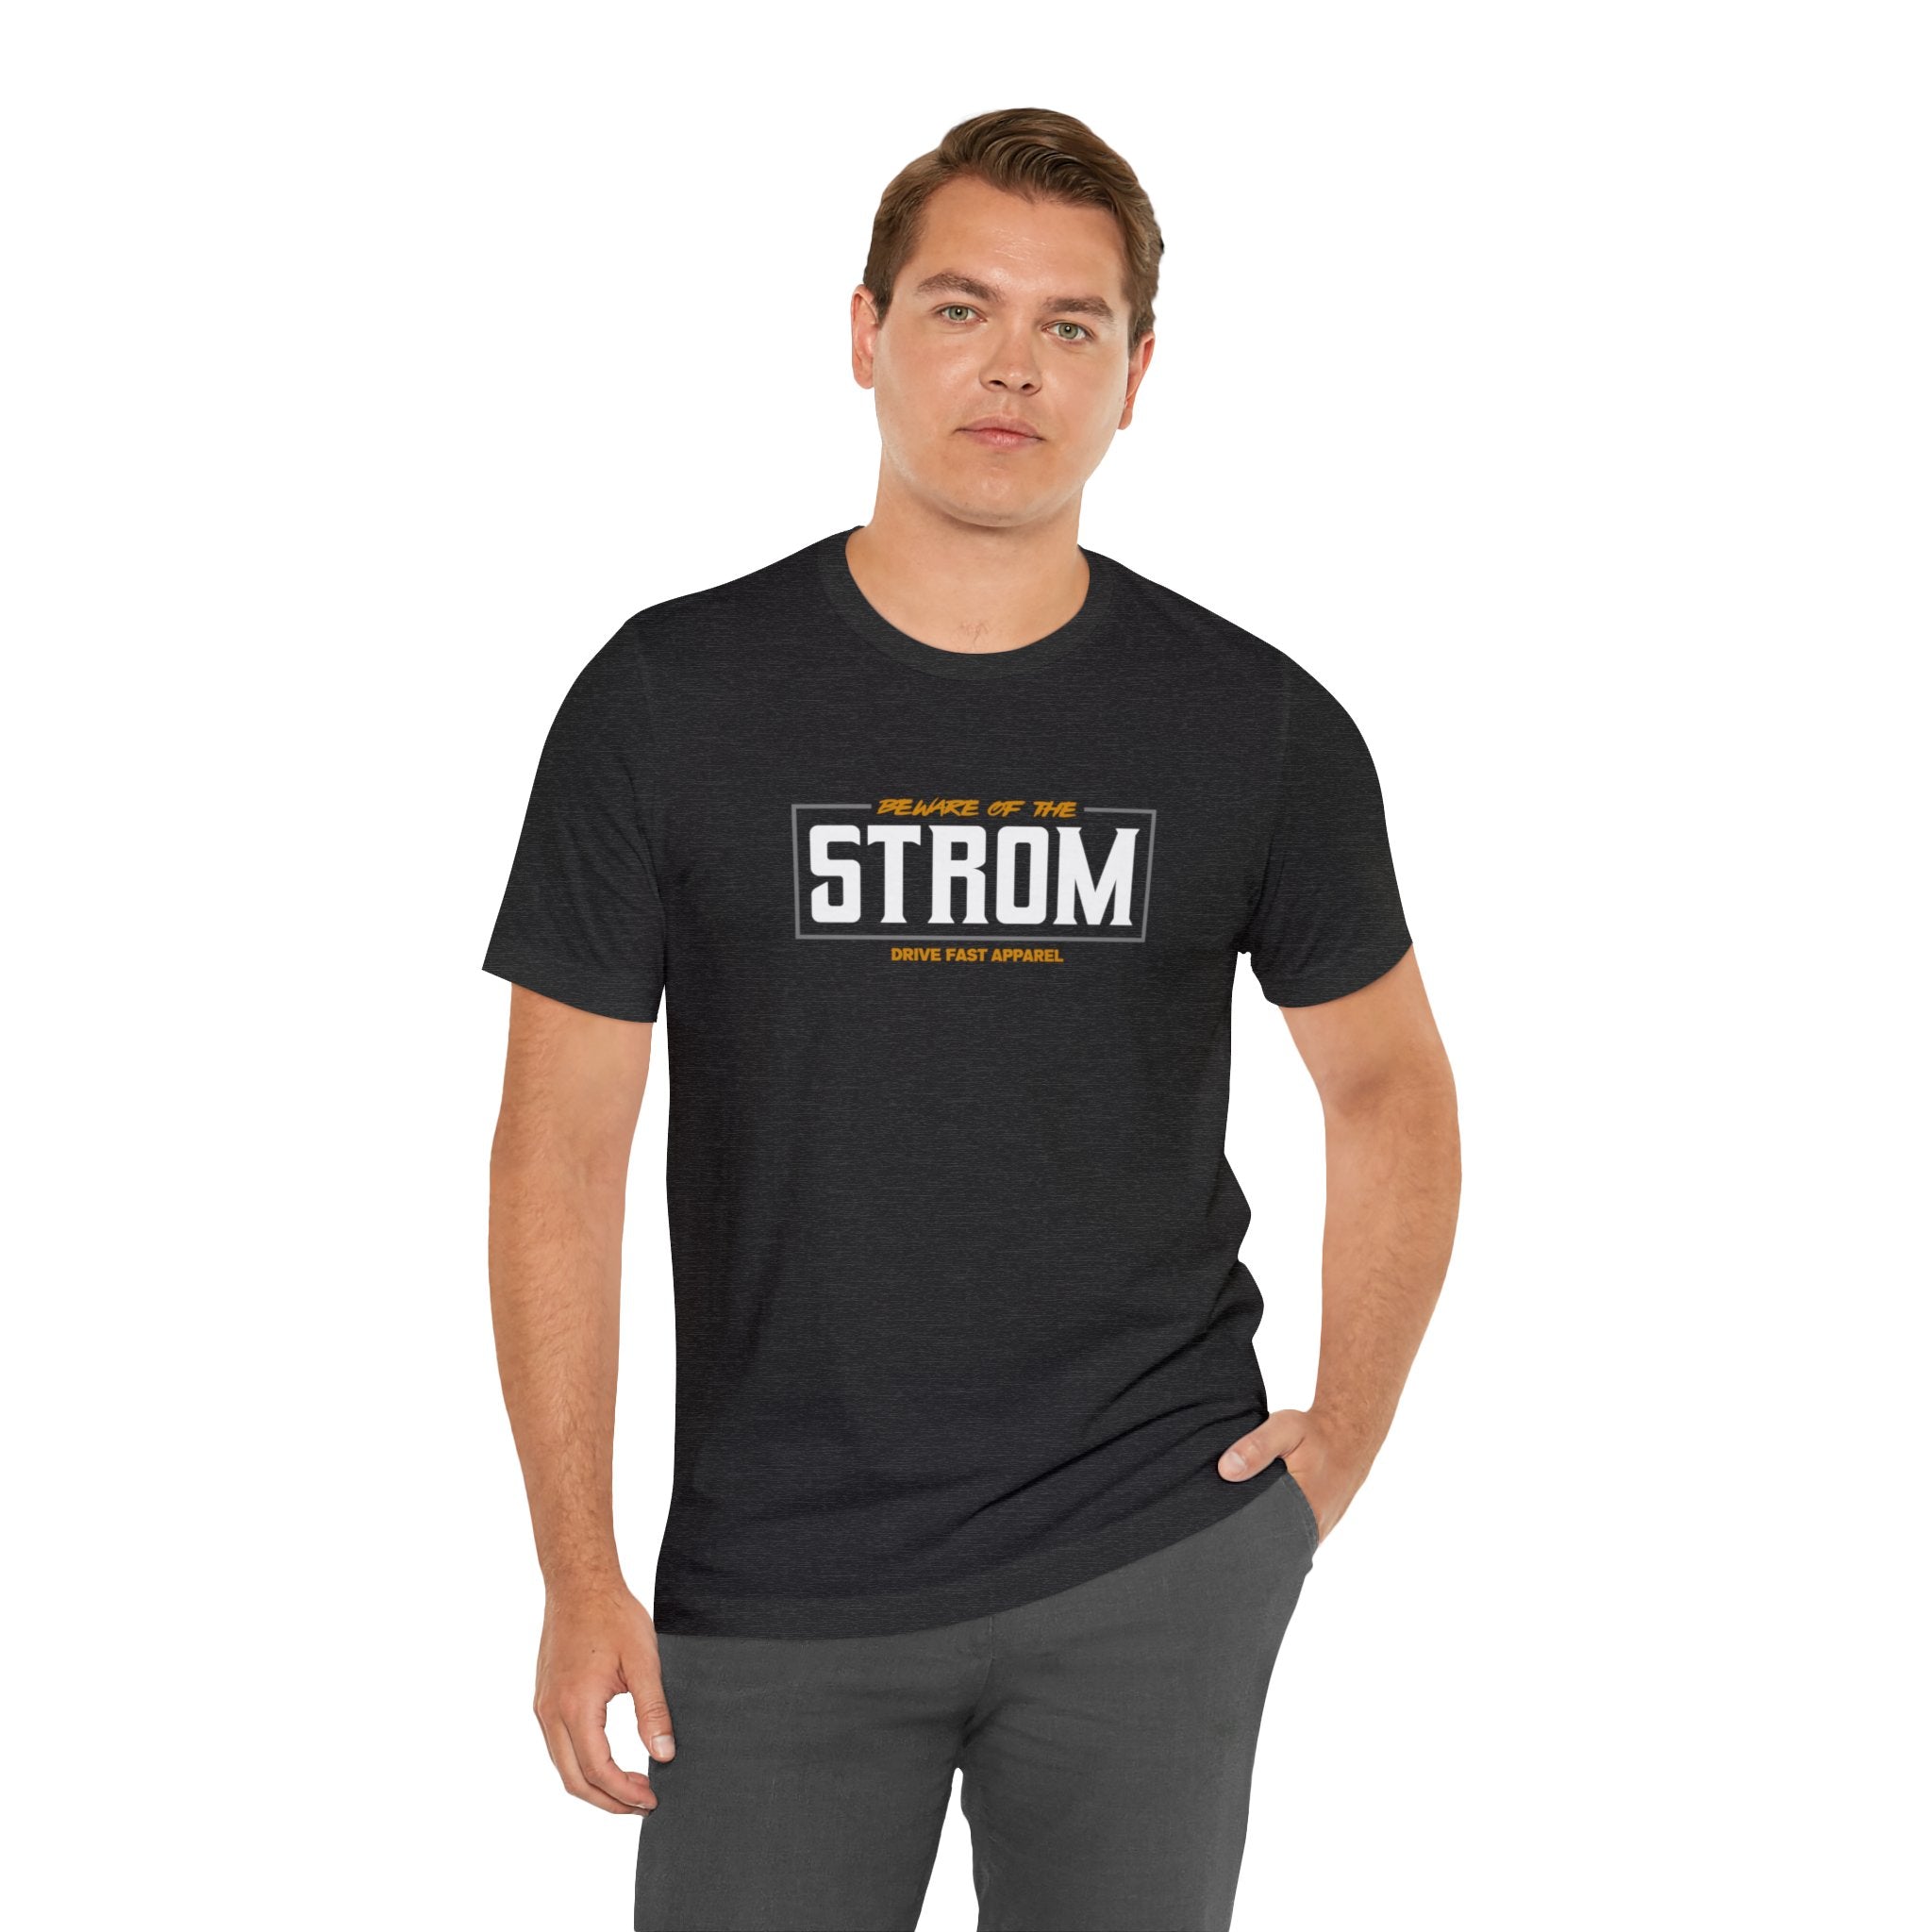 Beware Of The Strom T-Shirt